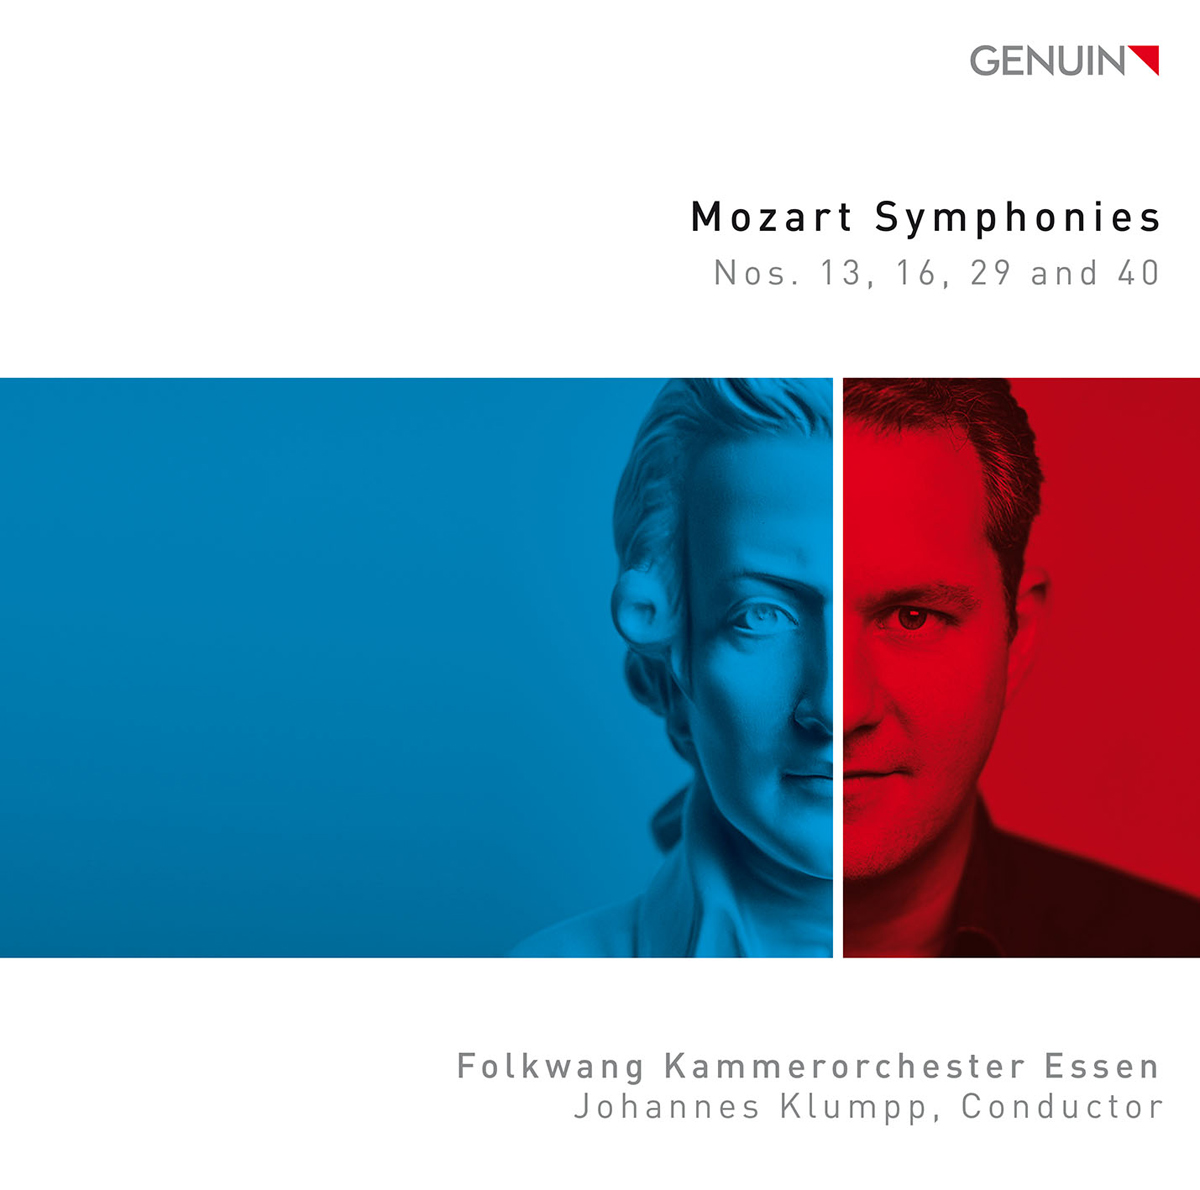 CD album cover 'Mozart Symphonies' (GEN 19636) with Folkwang Kammerorchester Essen, Johannes Klumpp